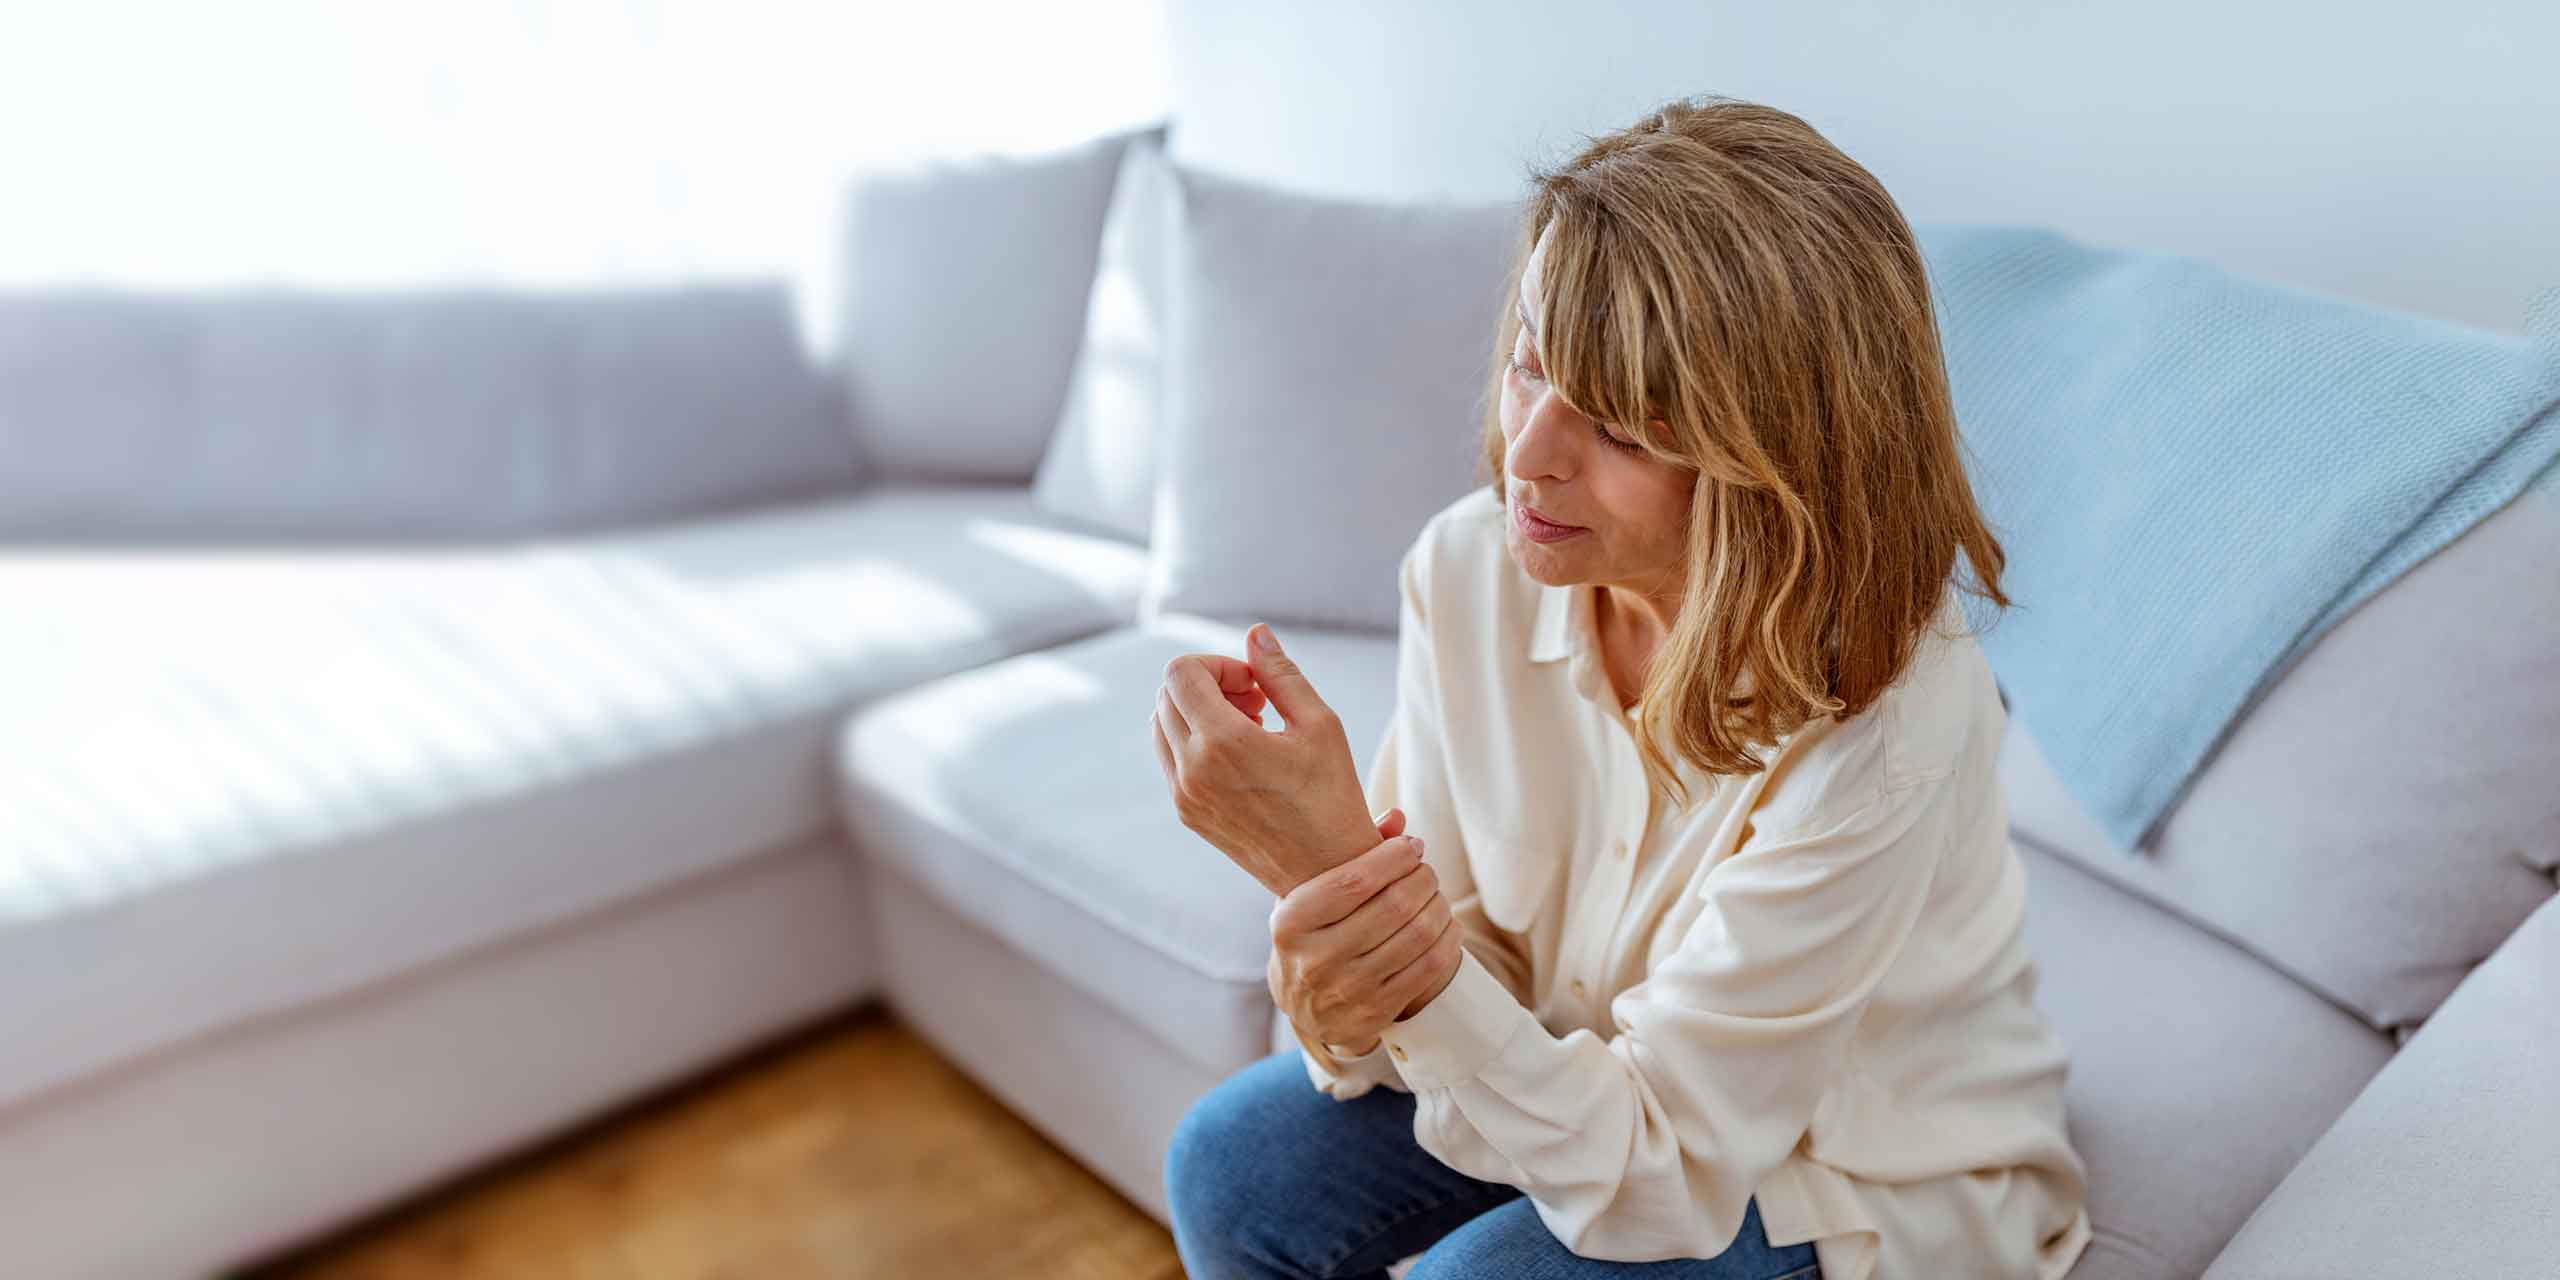 Eine Frau in weißer Bluse und Jeans sitzt in einem hell erleuchteten Wohnzimmer auf einer Couch und blickt mit besorgtem Gesichtsausdruck auf ihre Hand.